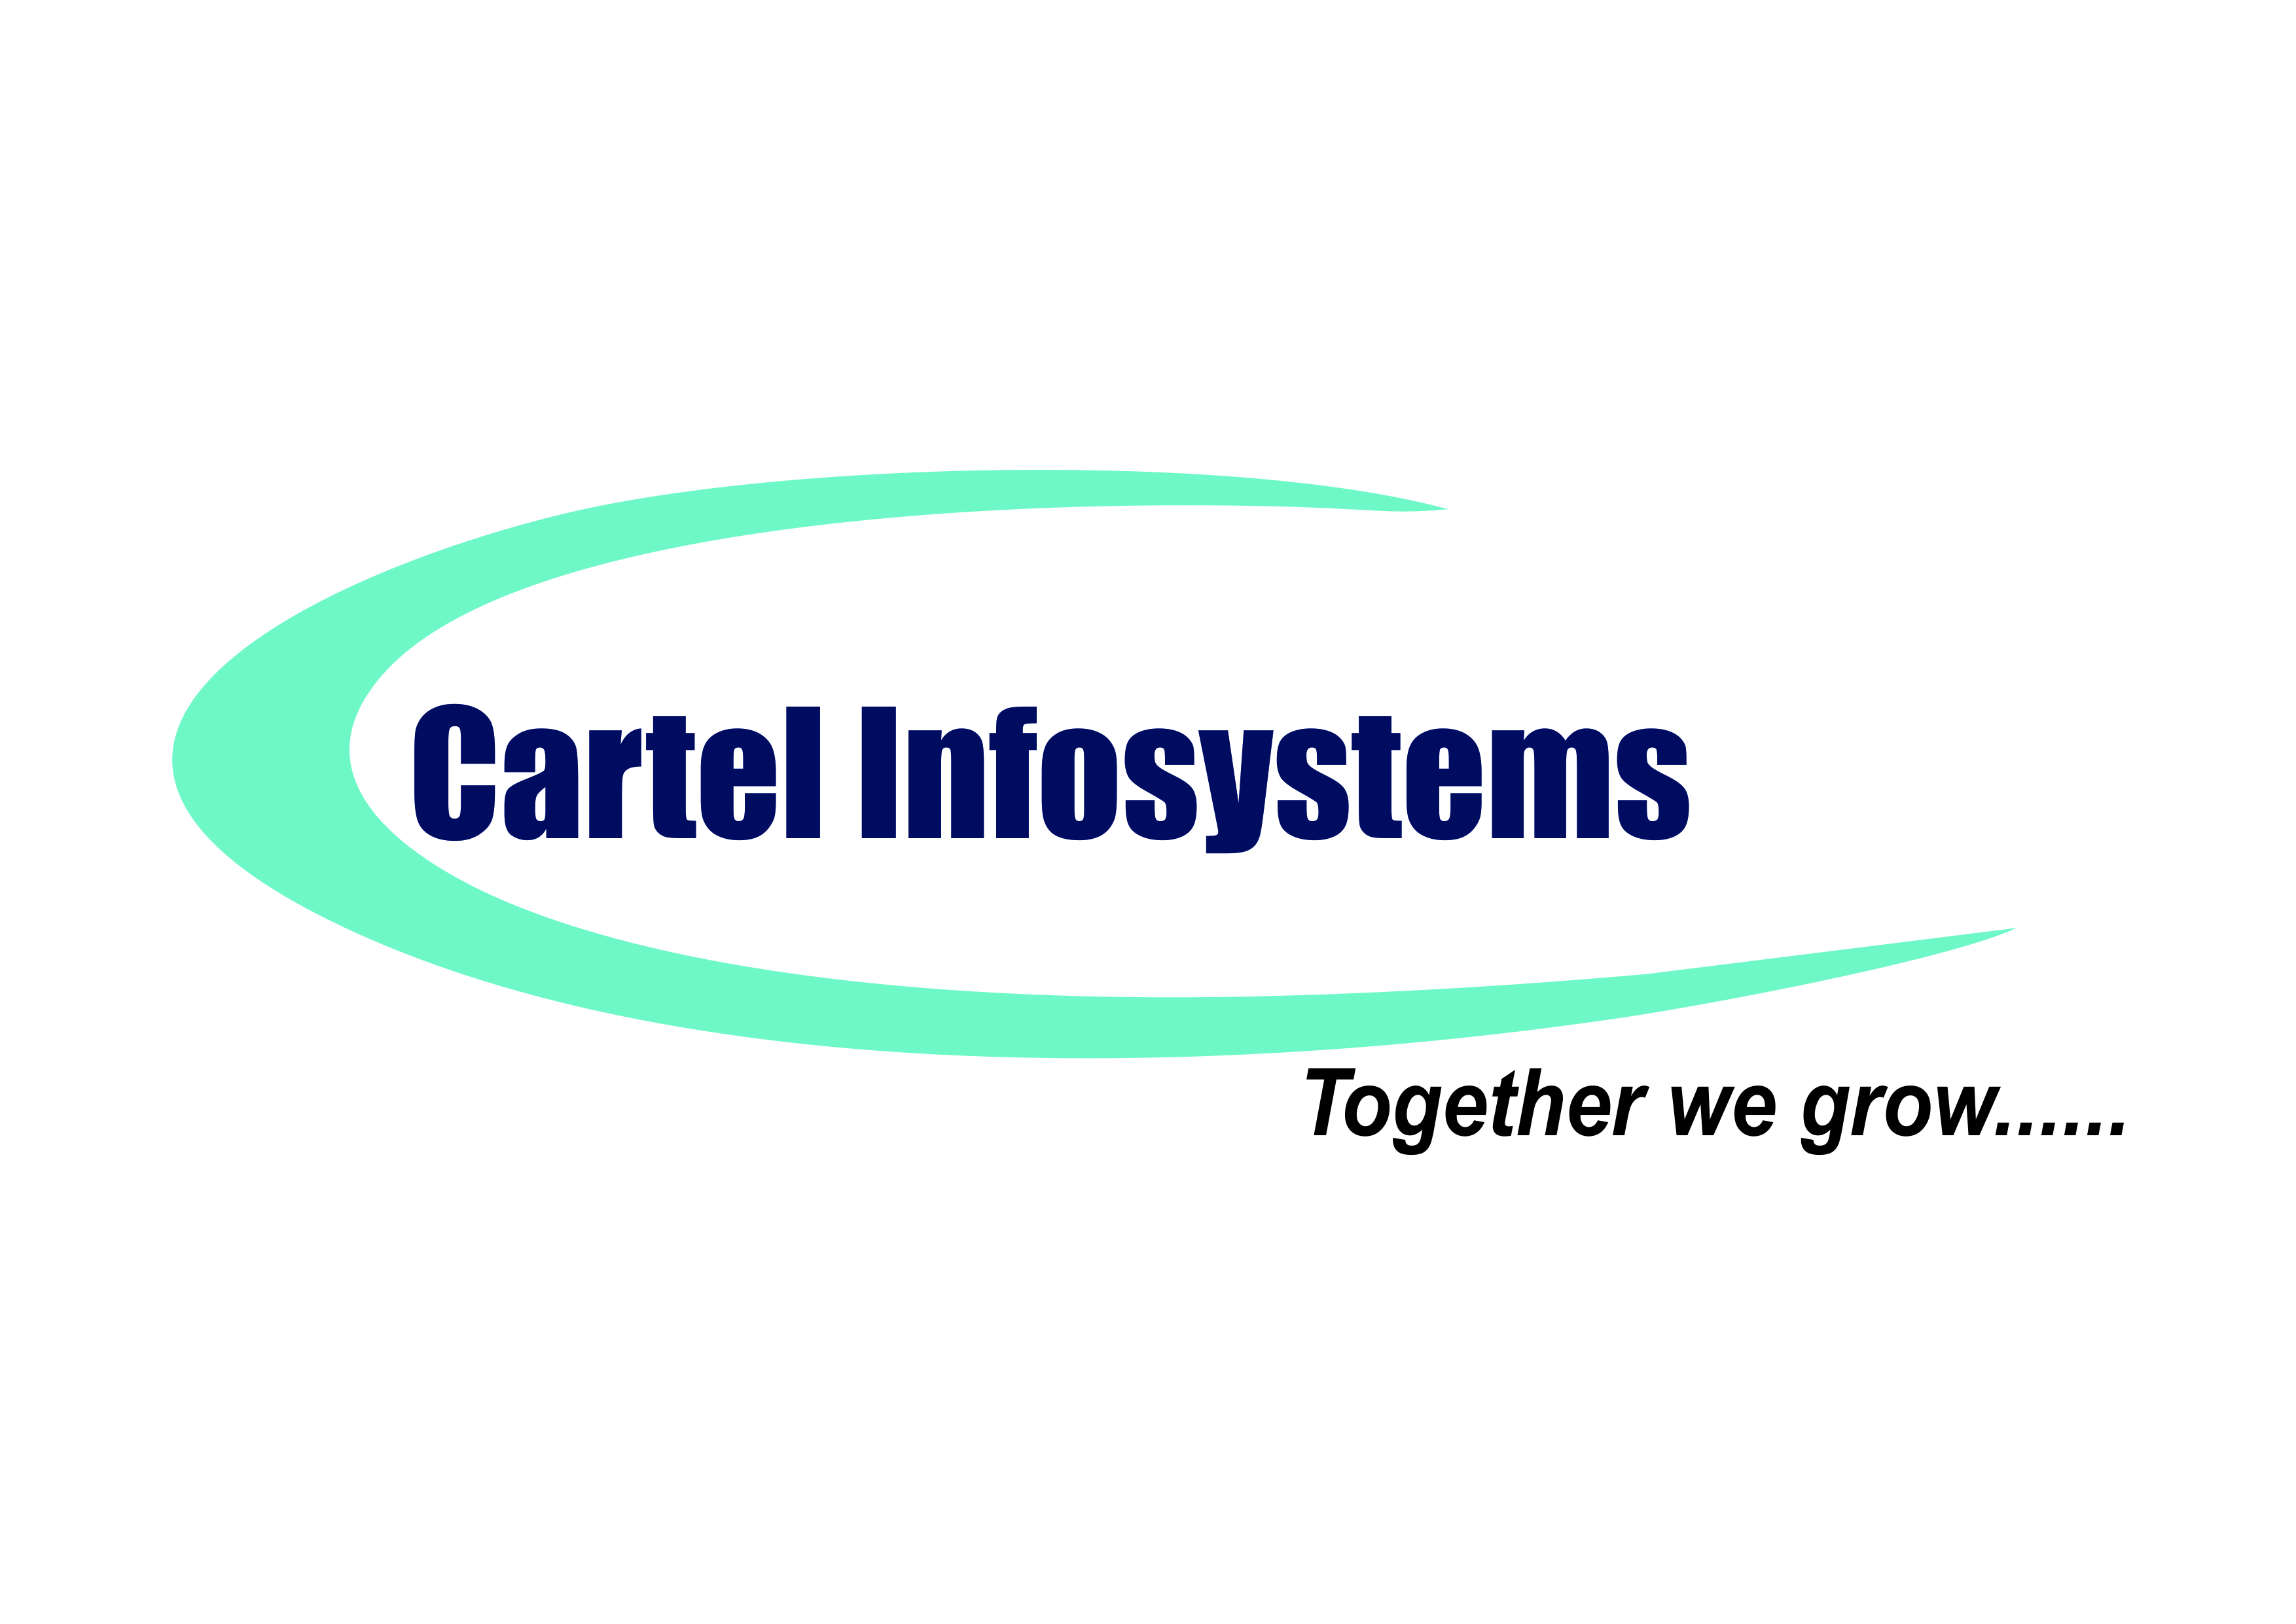 Cartel infosystems